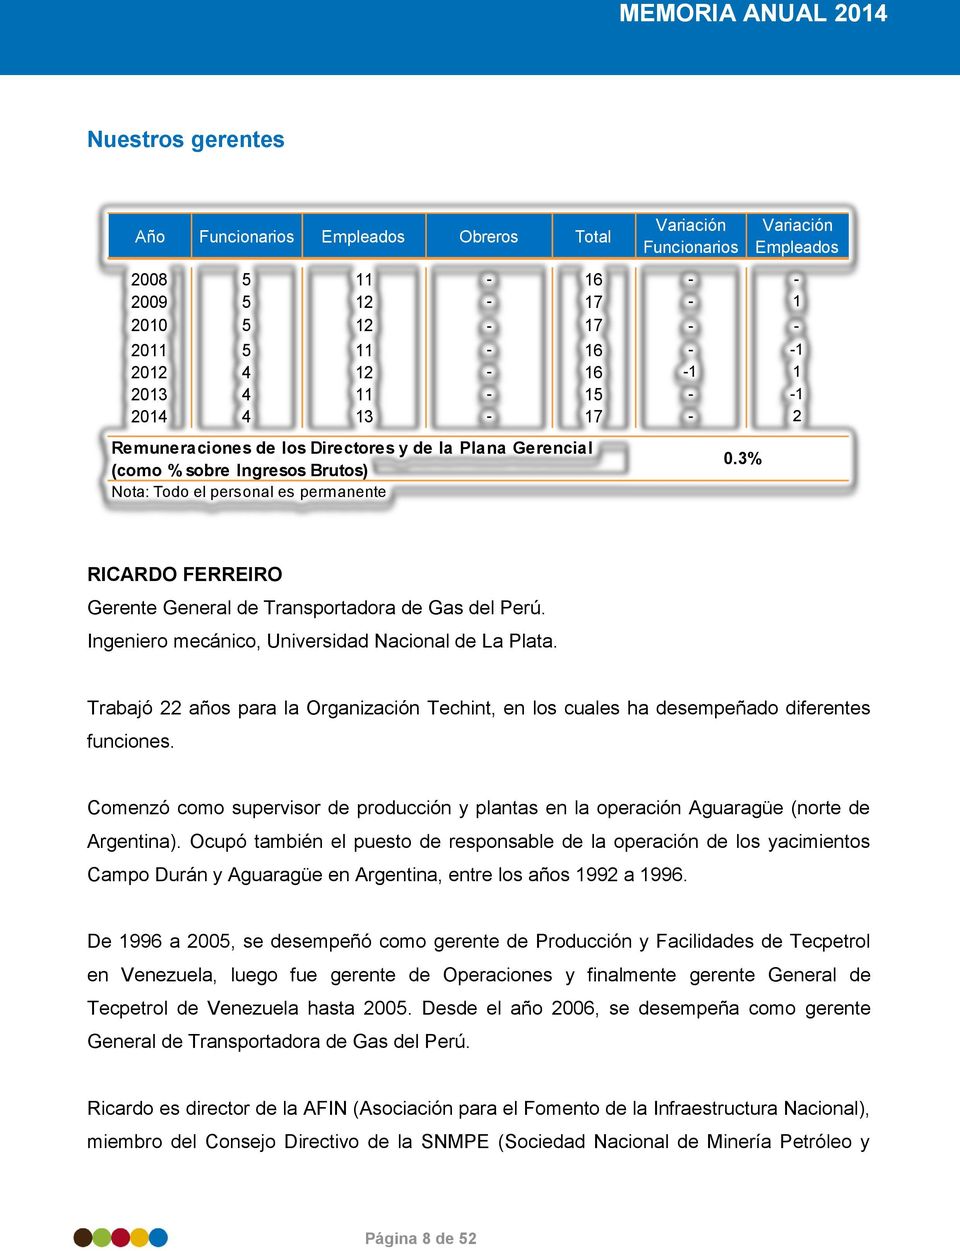 3% RICARDO FERREIRO Gerente General de Transportadora de Gas del Perú. Ingeniero mecánico, Universidad Nacional de La Plata.